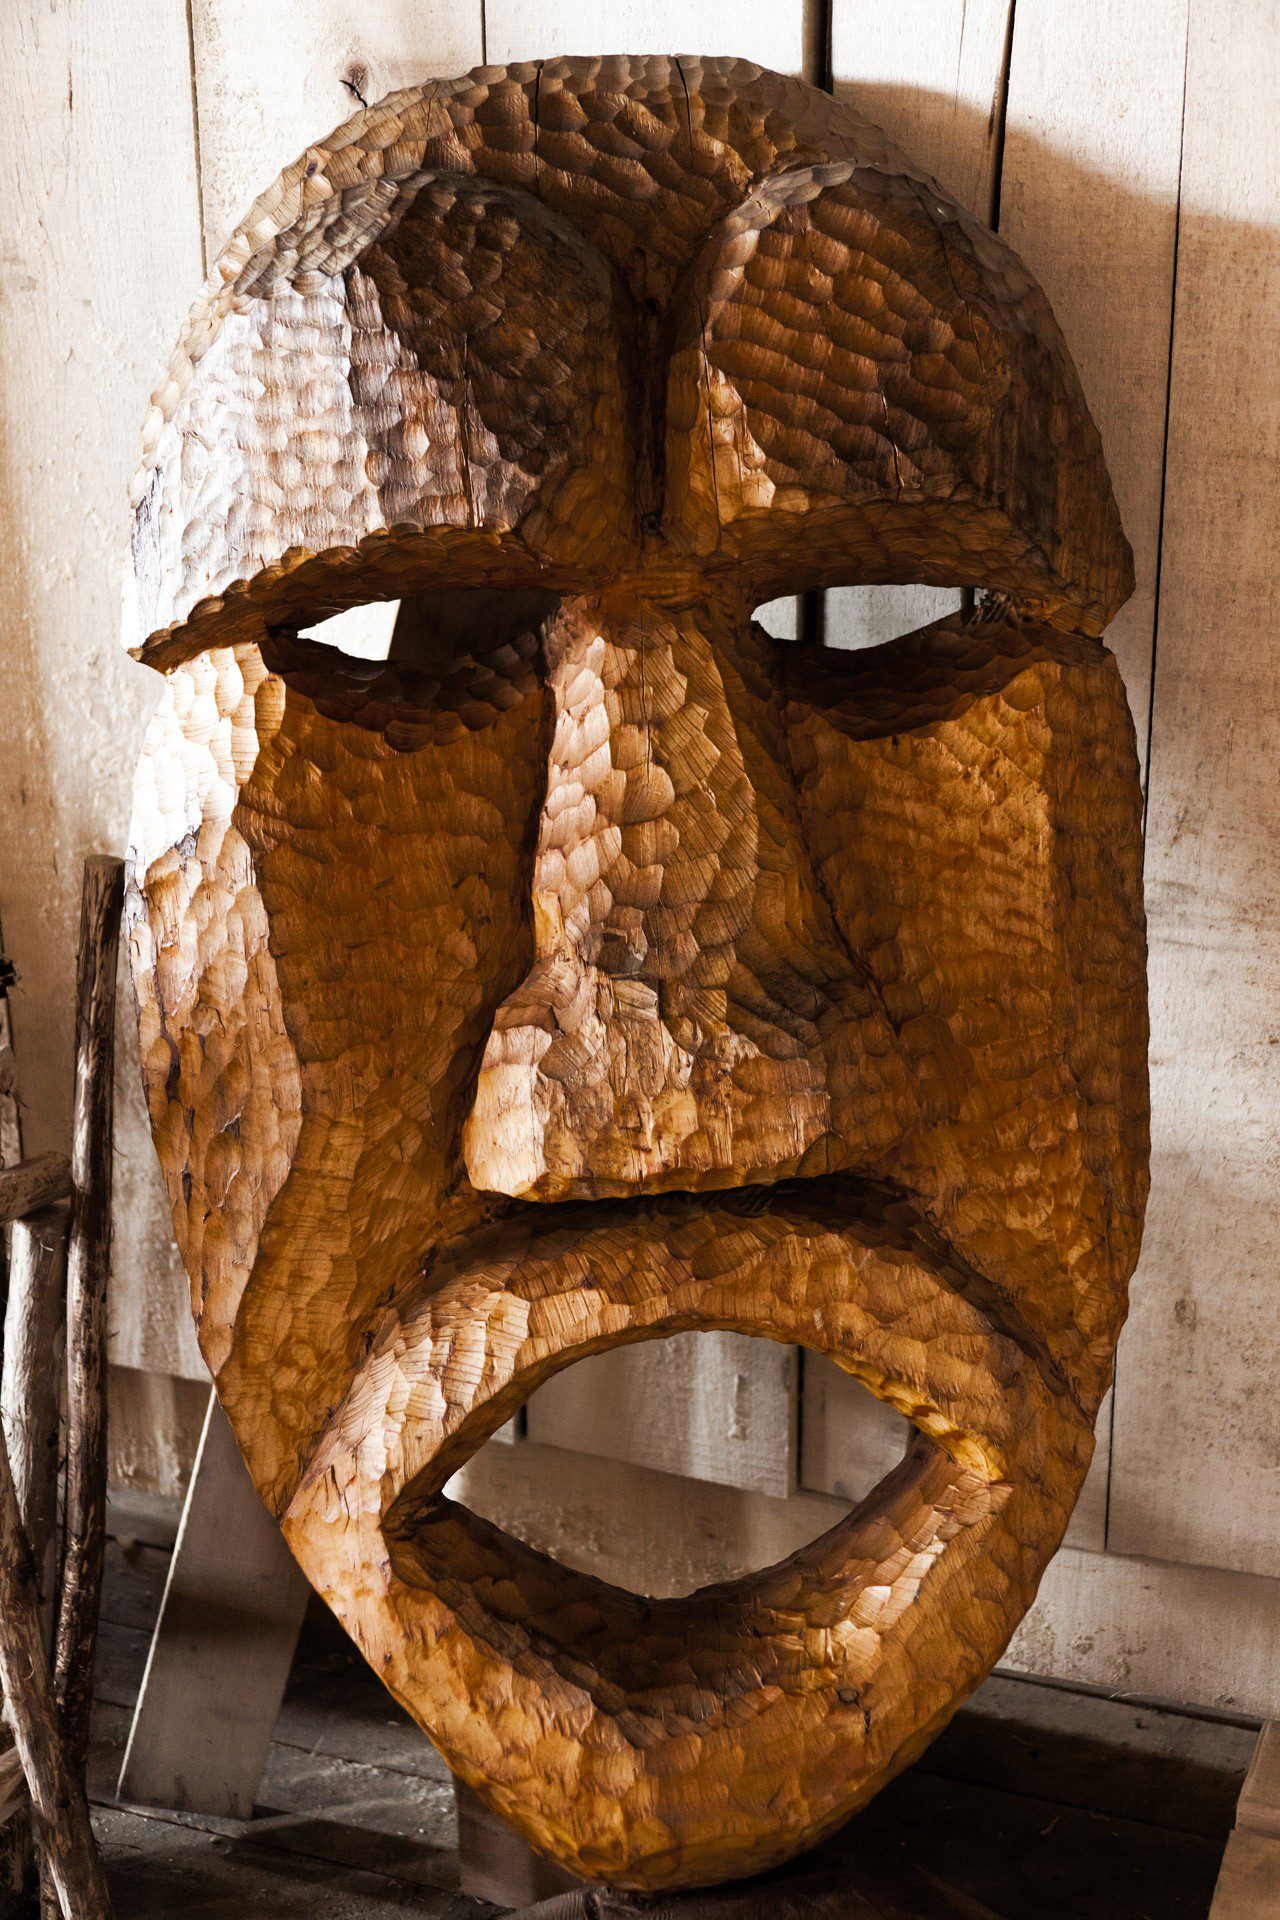 Ariyapala Mask Museum